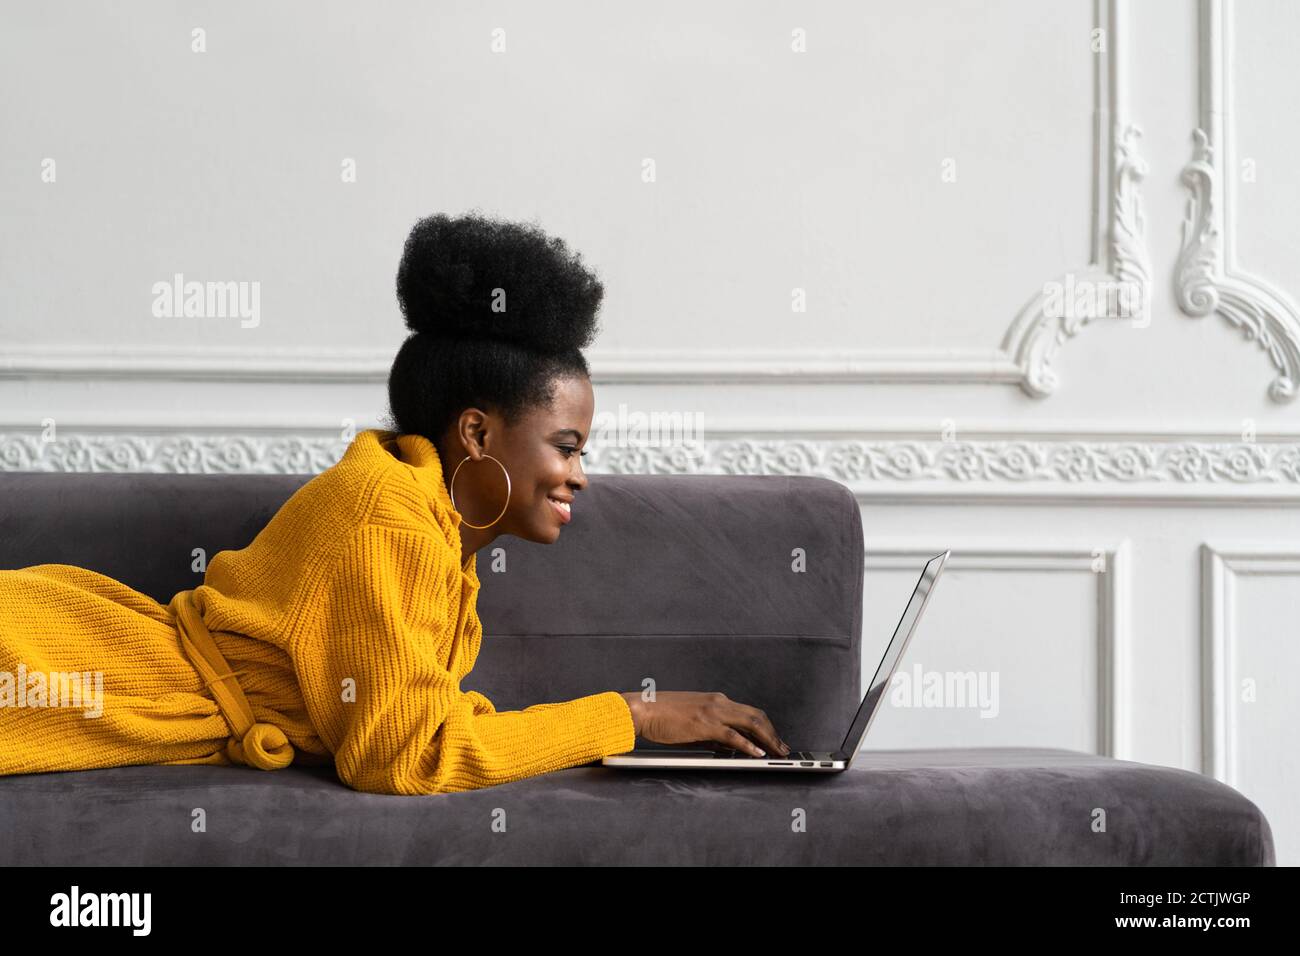 Gros plan de la femme biraciale afro-américaine souriante avec une coiffure afro-américaine dans un gilet jaune allongé sur un canapé, au repos, regardant la webcam de l'appareil photo et parlant Banque D'Images